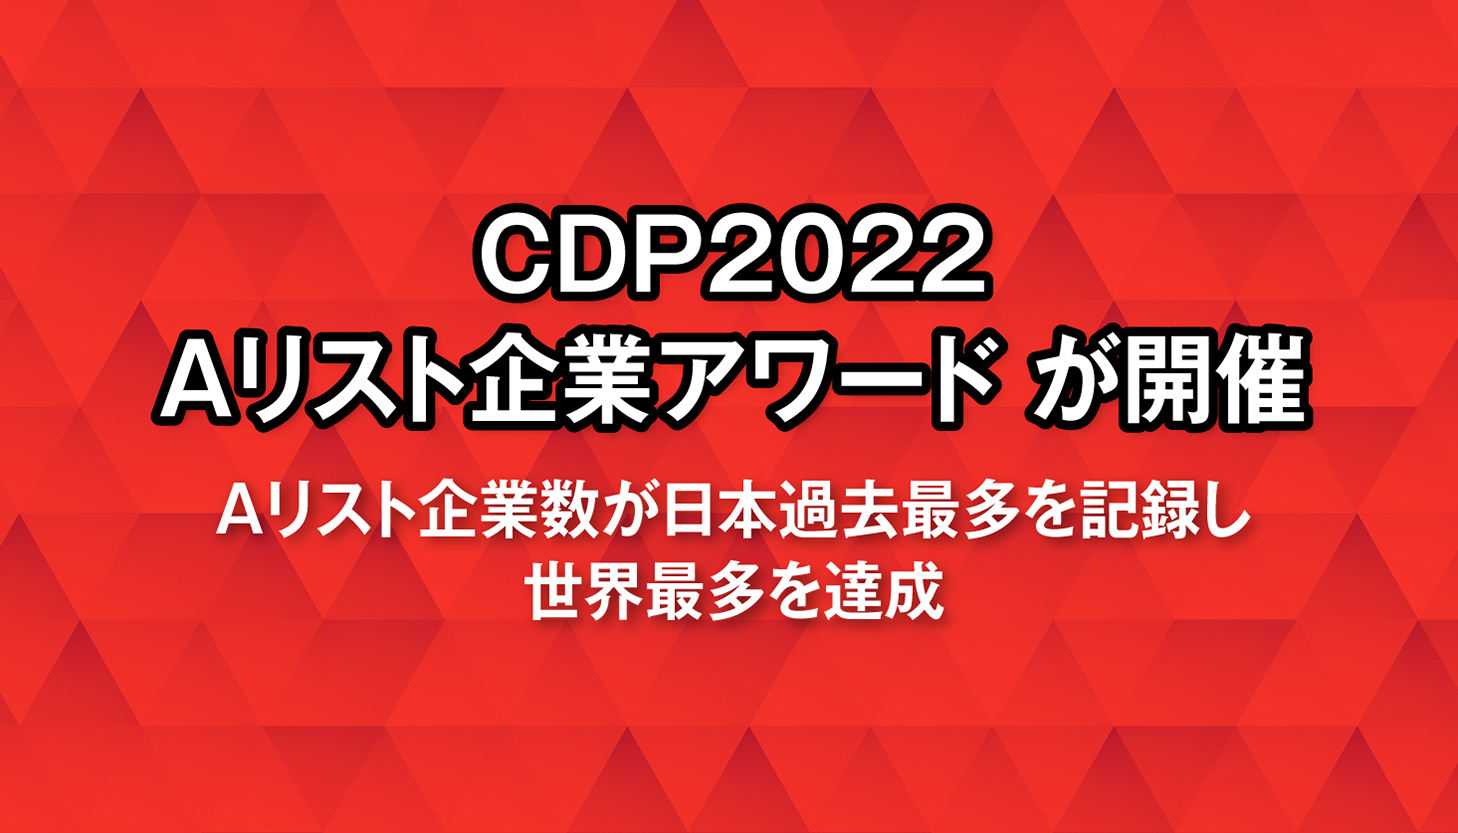 CDP2022 Aリスト企業アワード が開催～Aリスト企業数が日本過去最多を記録し、世界最多を達成～